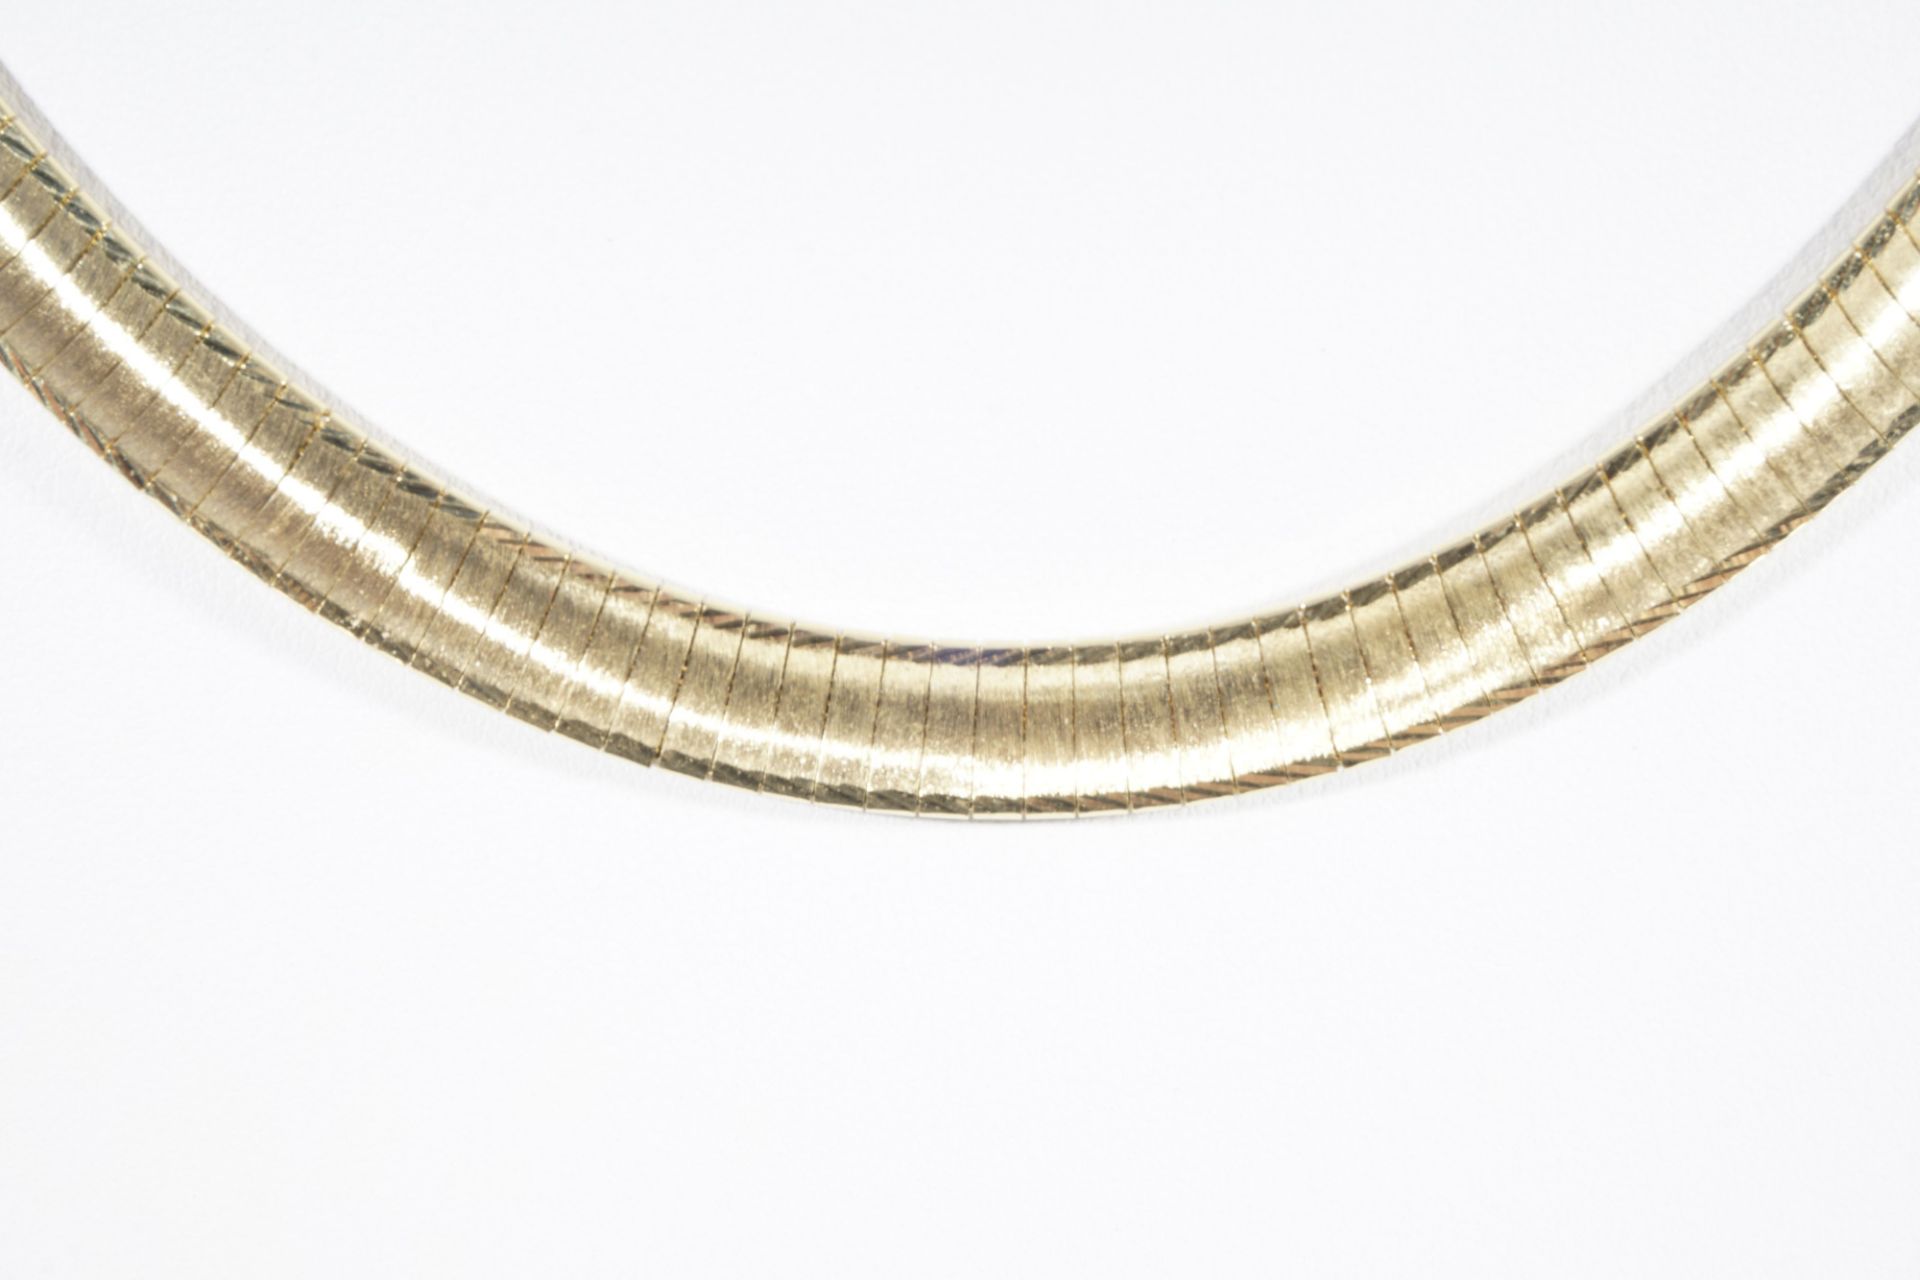 750 Gold Schmuckset - Collier und Armband, 18K gold necklace and bracelet, jewelry set, - Bild 2 aus 5